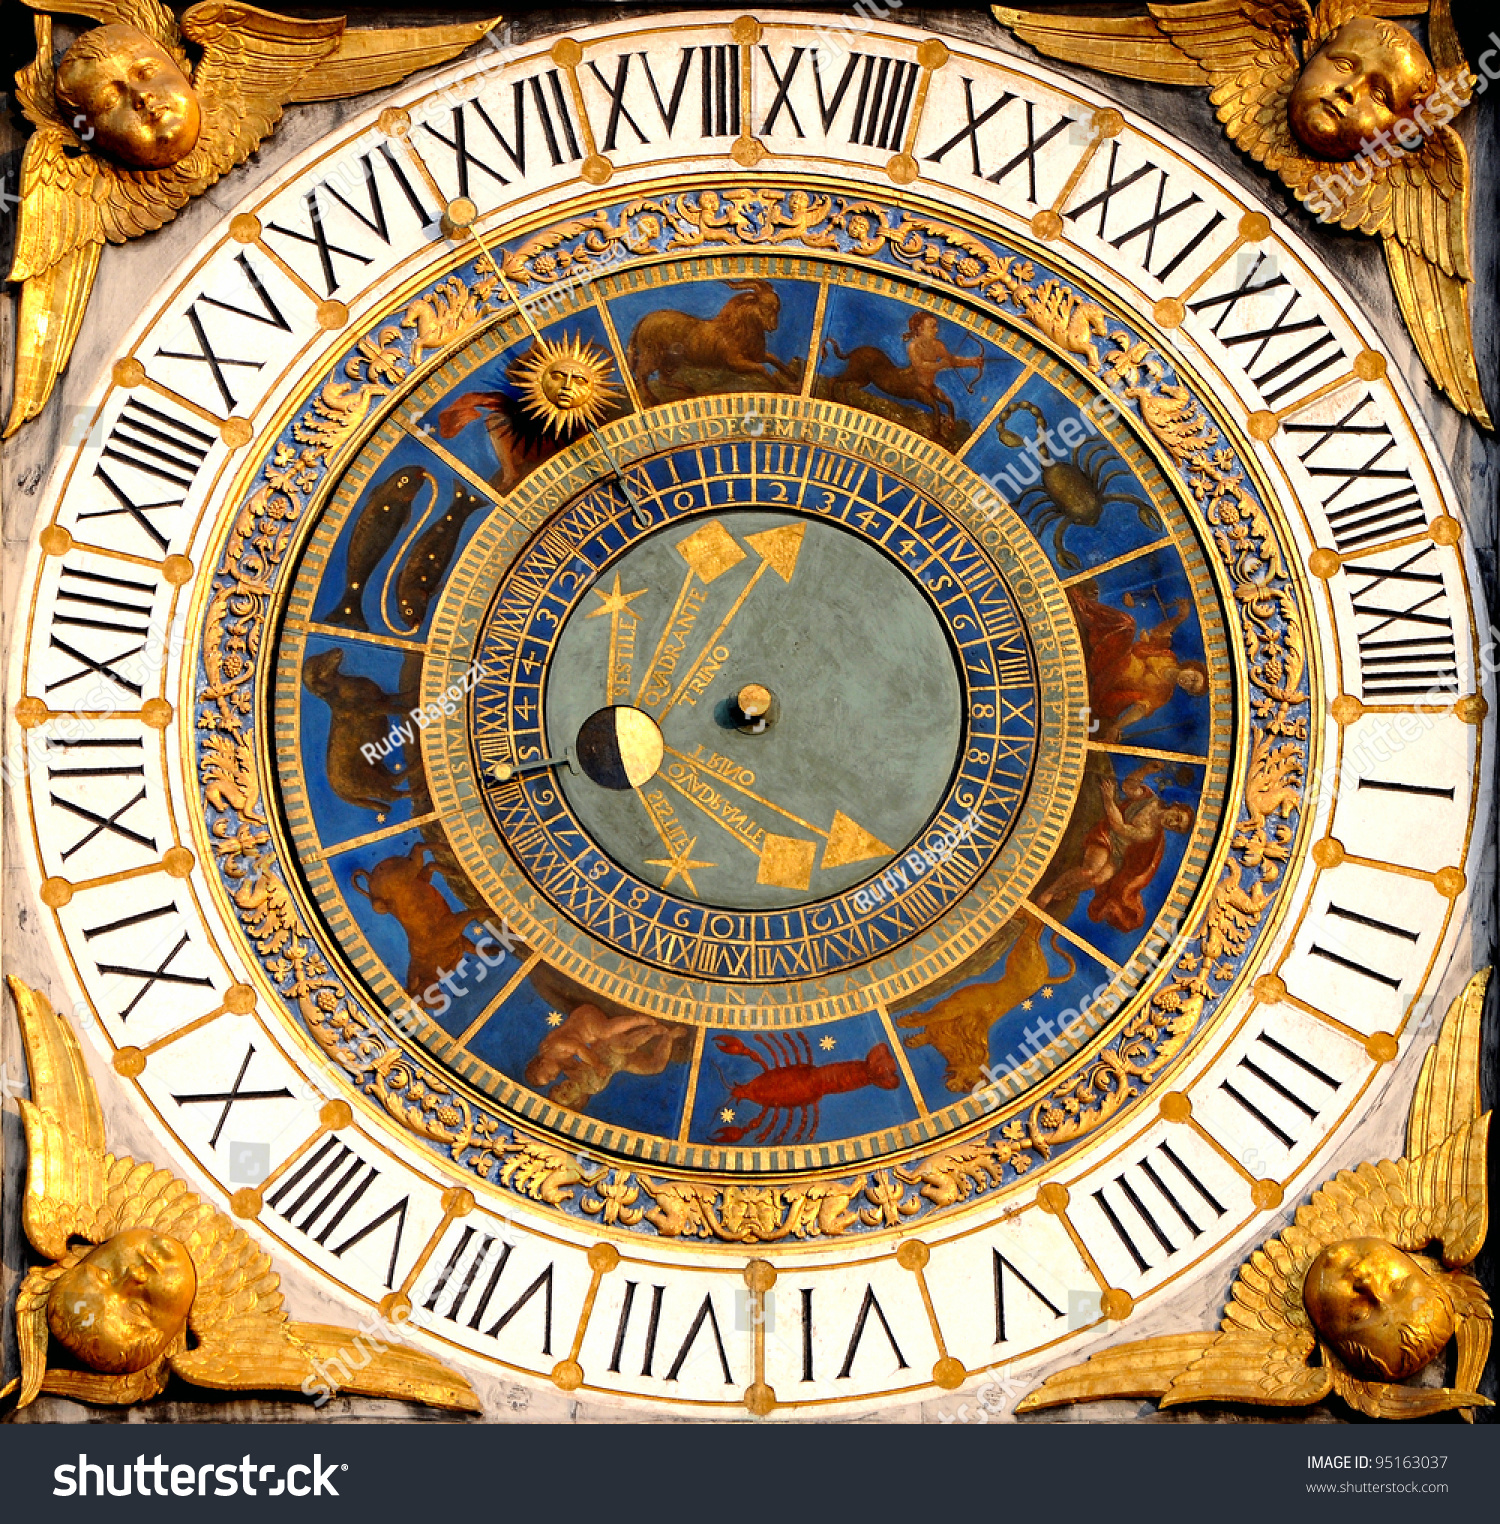 Время в италии часов. Астрономические часы Брешиа Италия. Эзотерические часы. Древние часы. Астрологические часы древние.